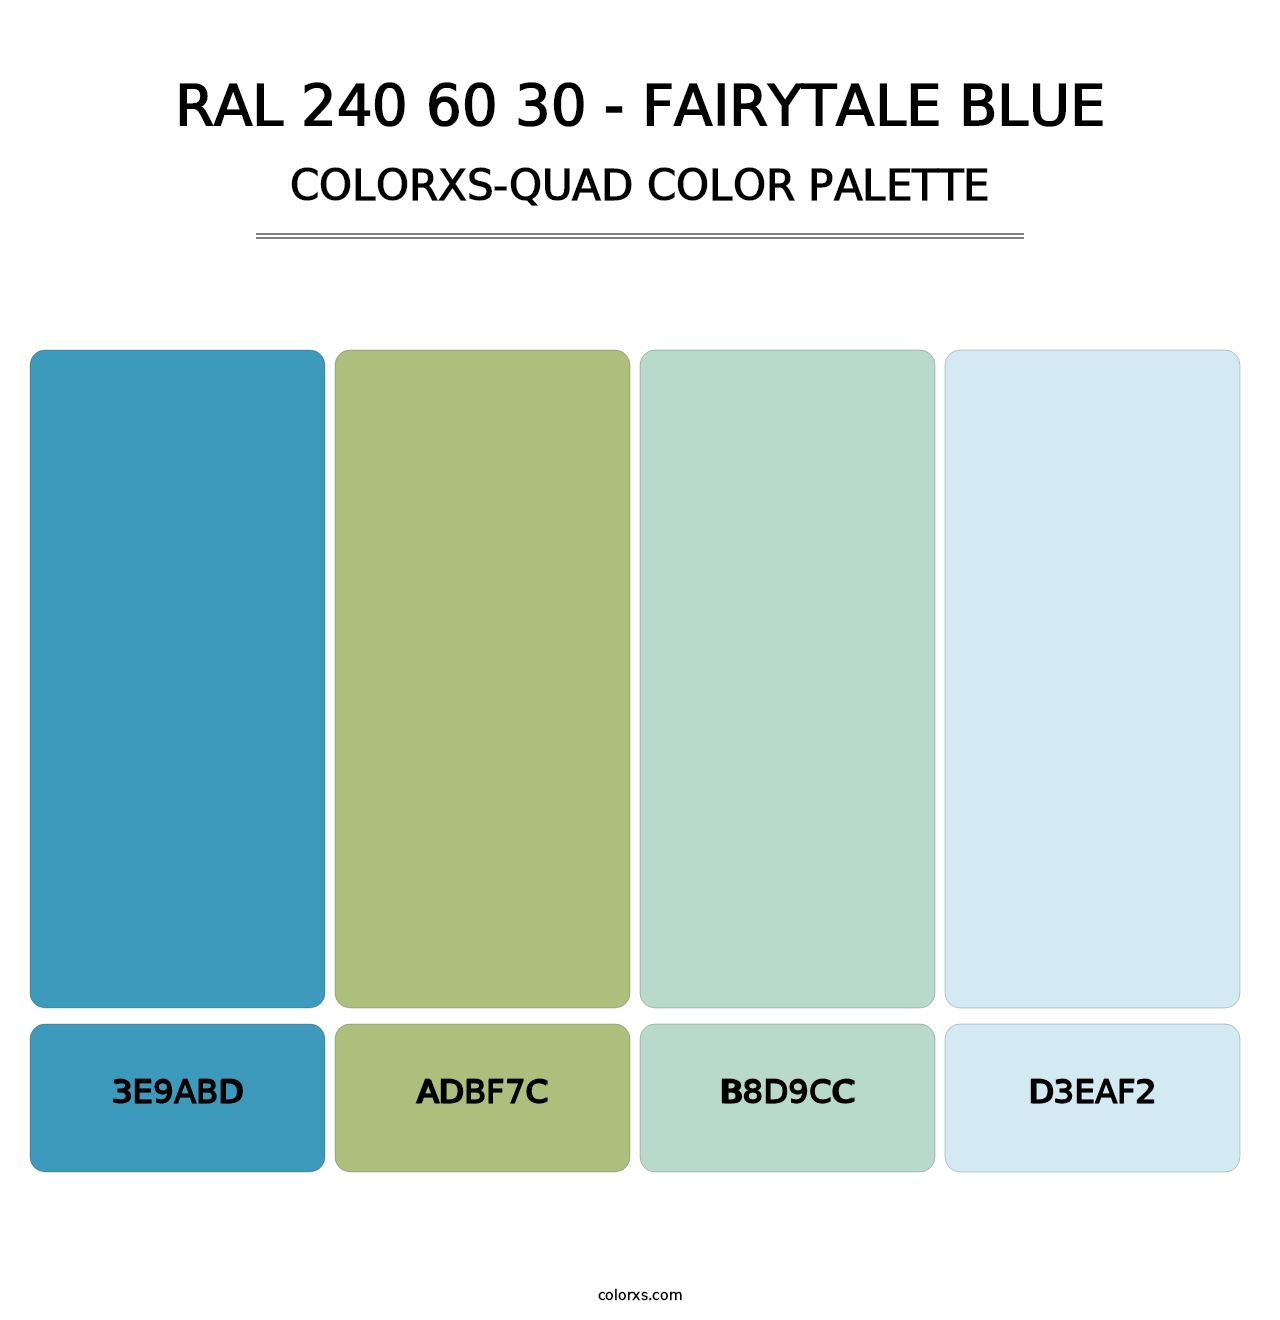 RAL 240 60 30 - Fairytale Blue - Colorxs Quad Palette